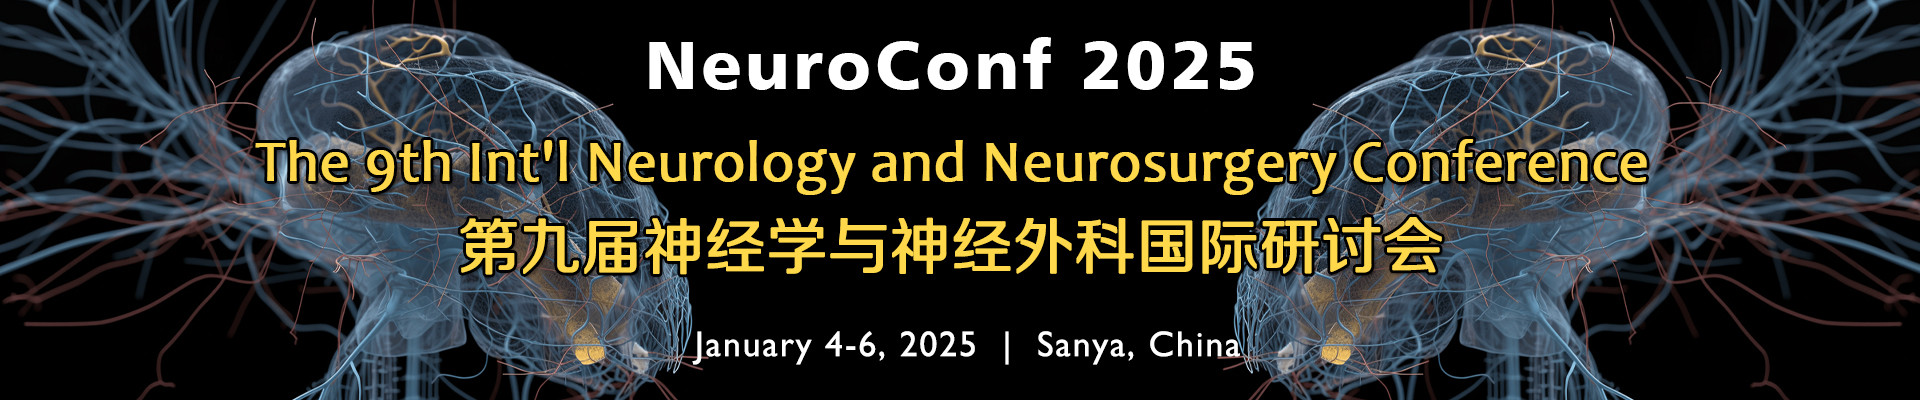 第九届神经学与神经外科国际研讨会(NeuroConf 2025)